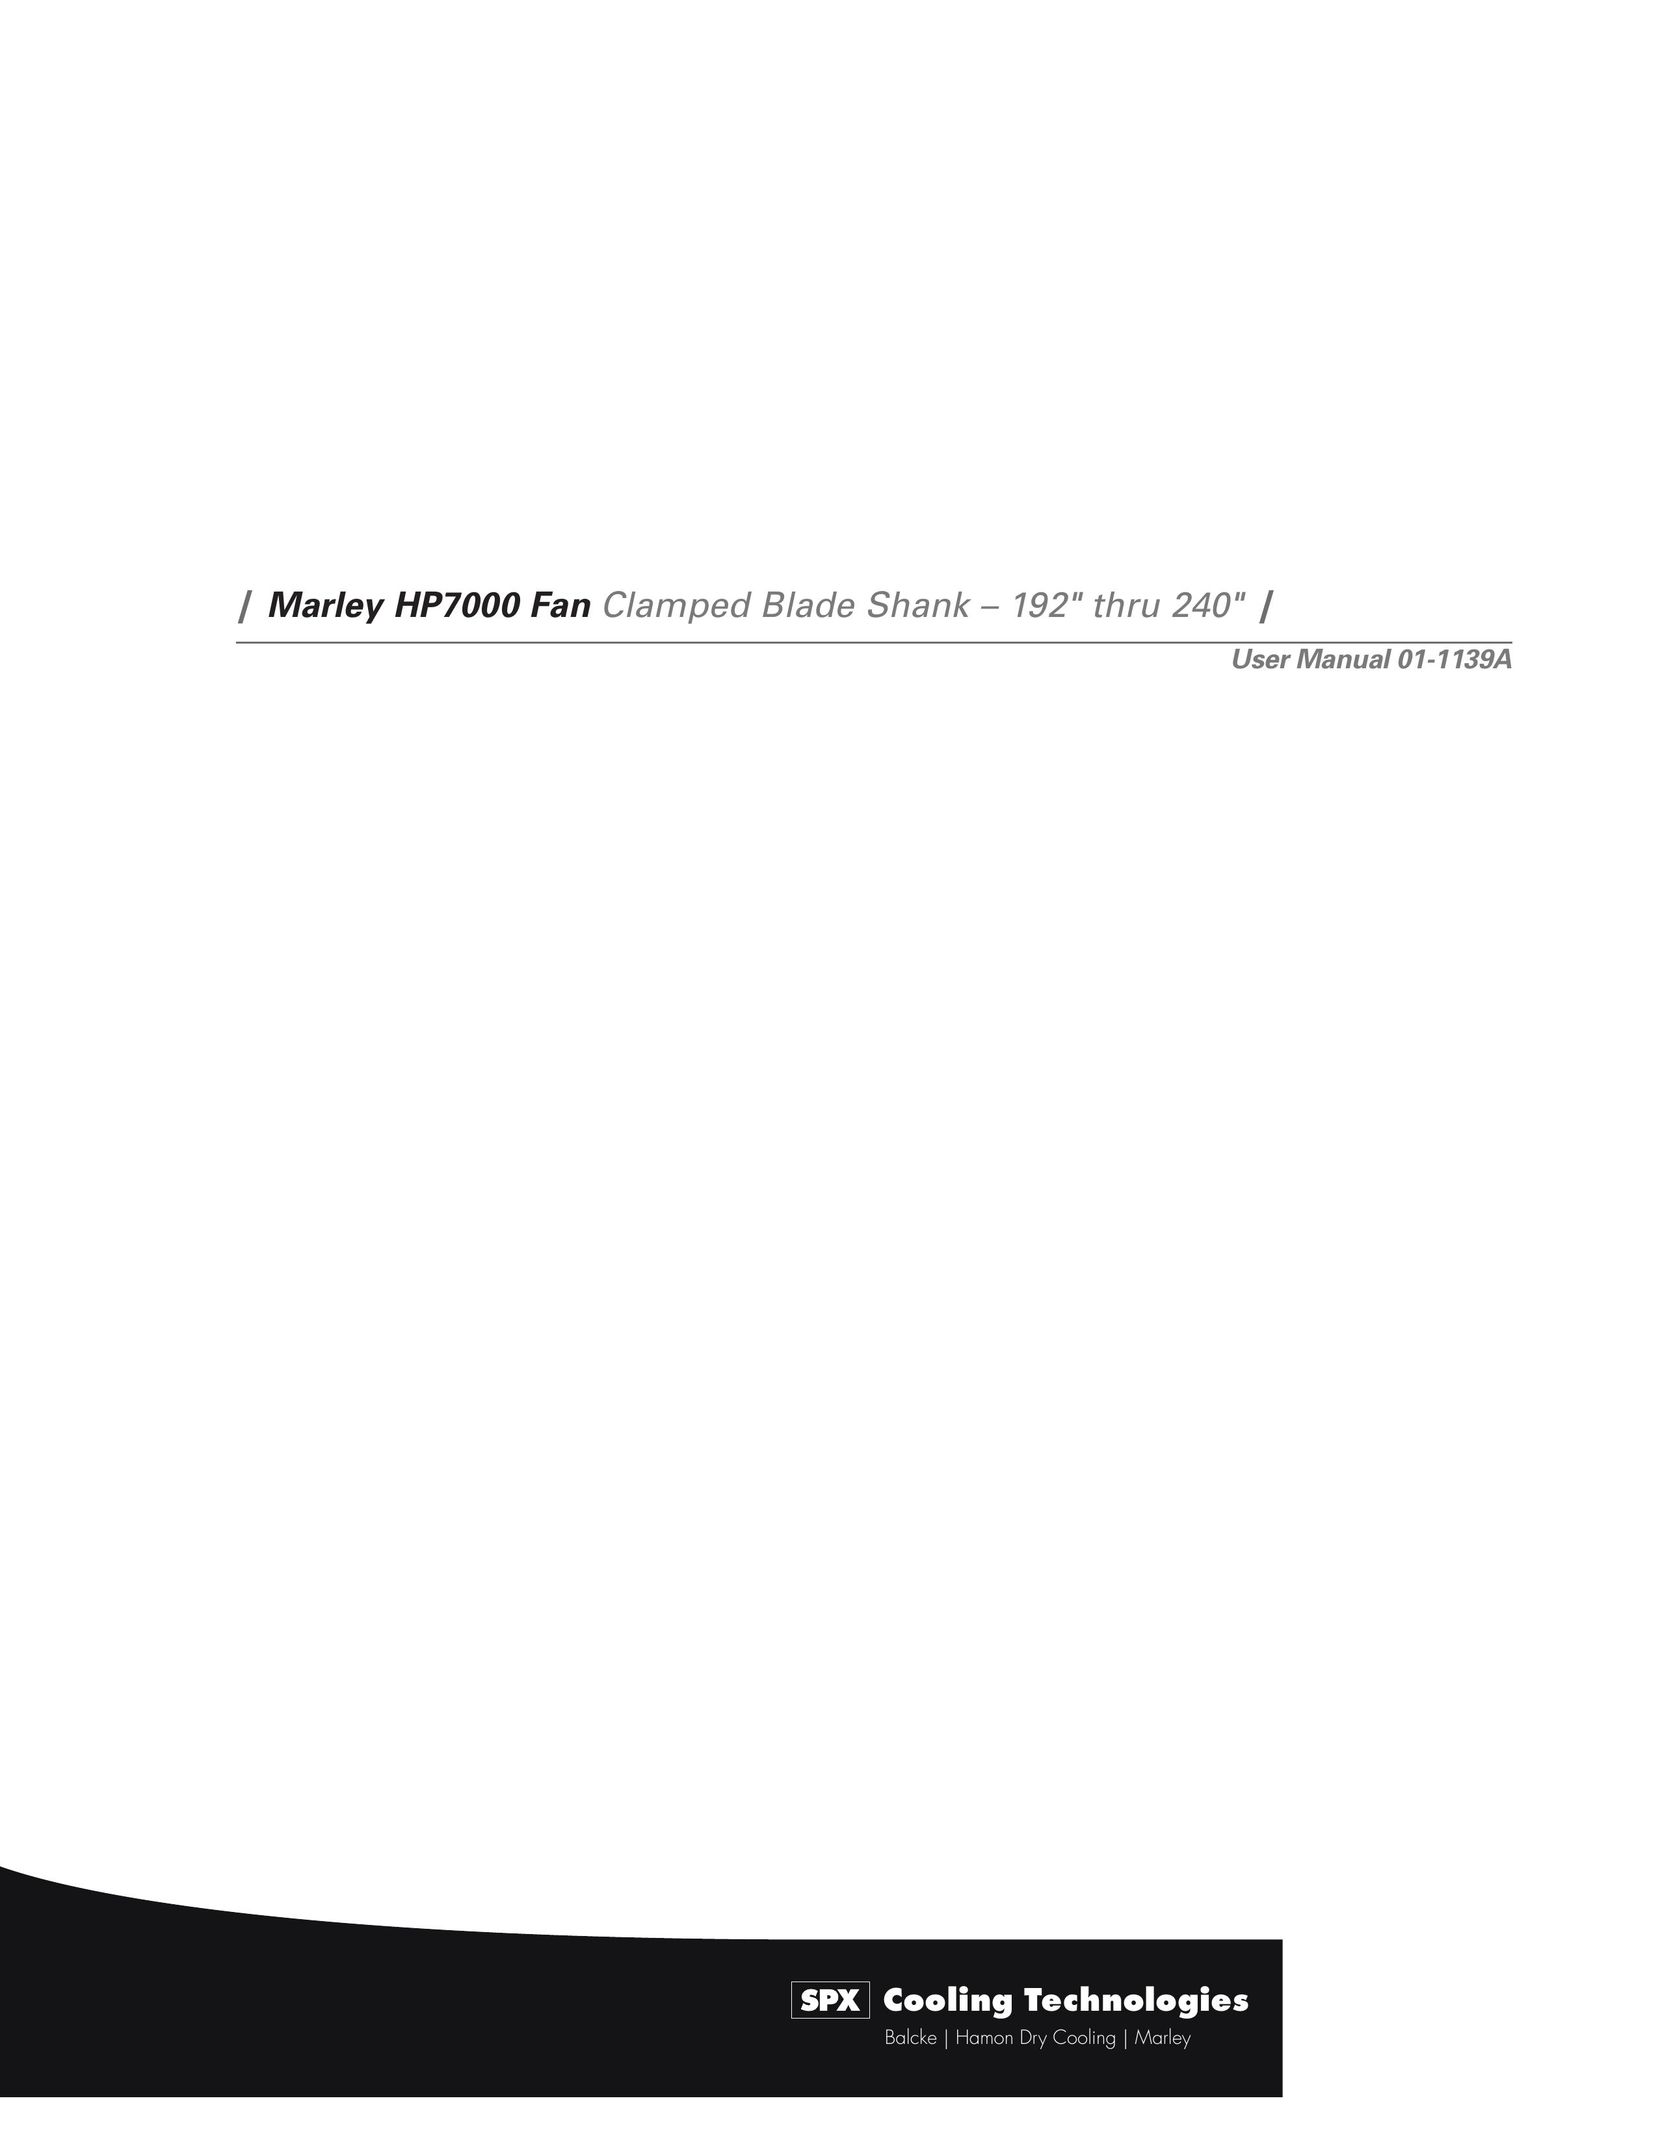 SPX Cooling Technologies HP7000 Fan User Manual